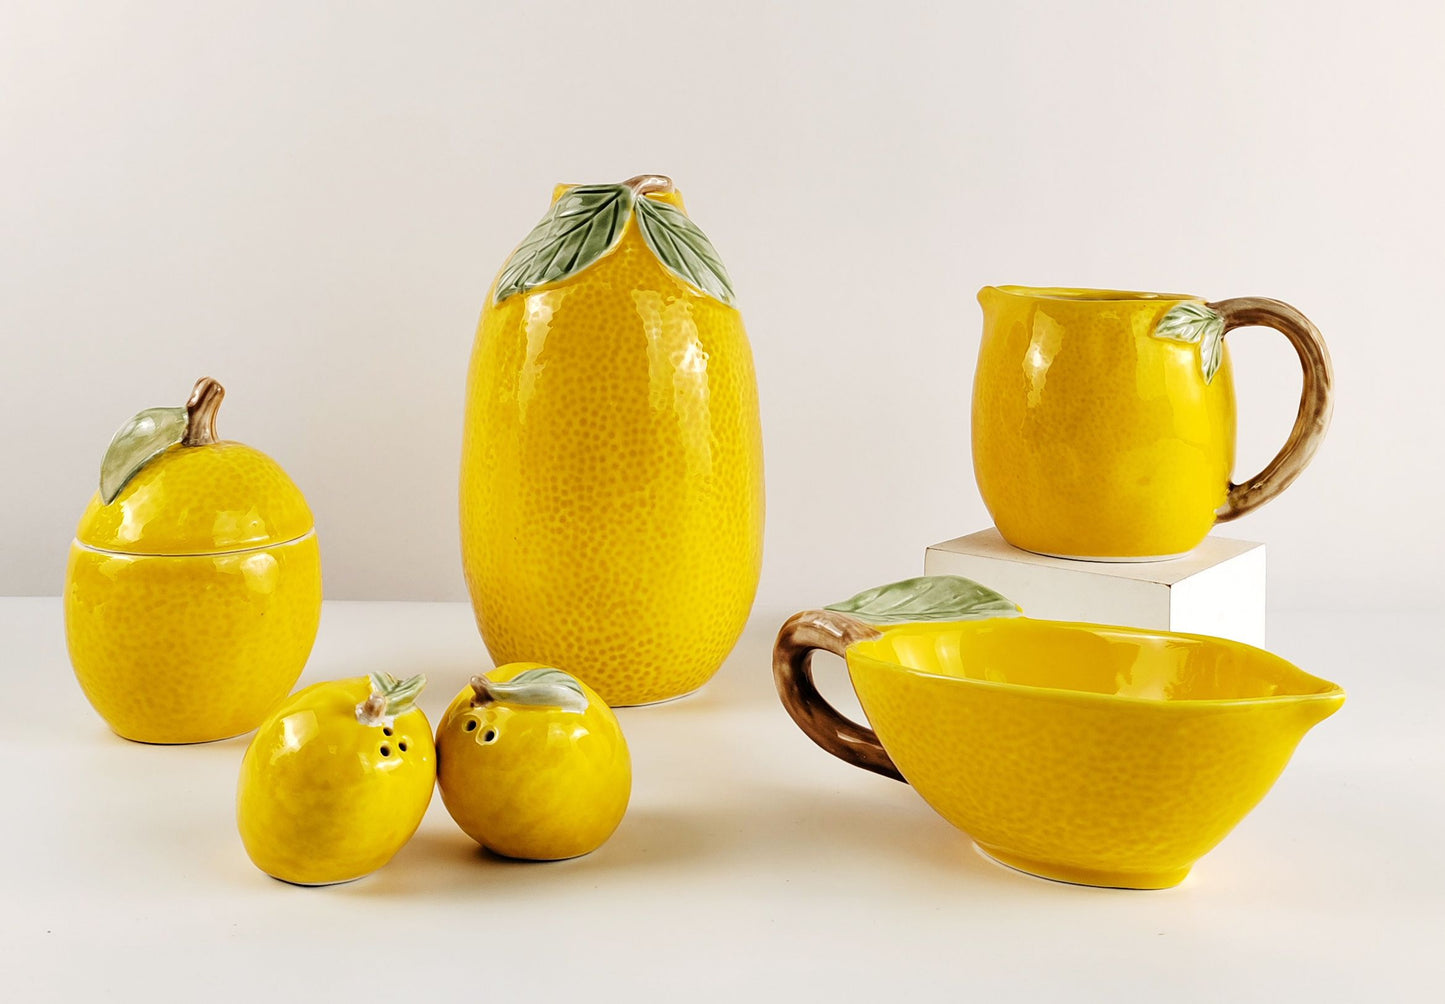 19cm Lemon Dish - Yellow